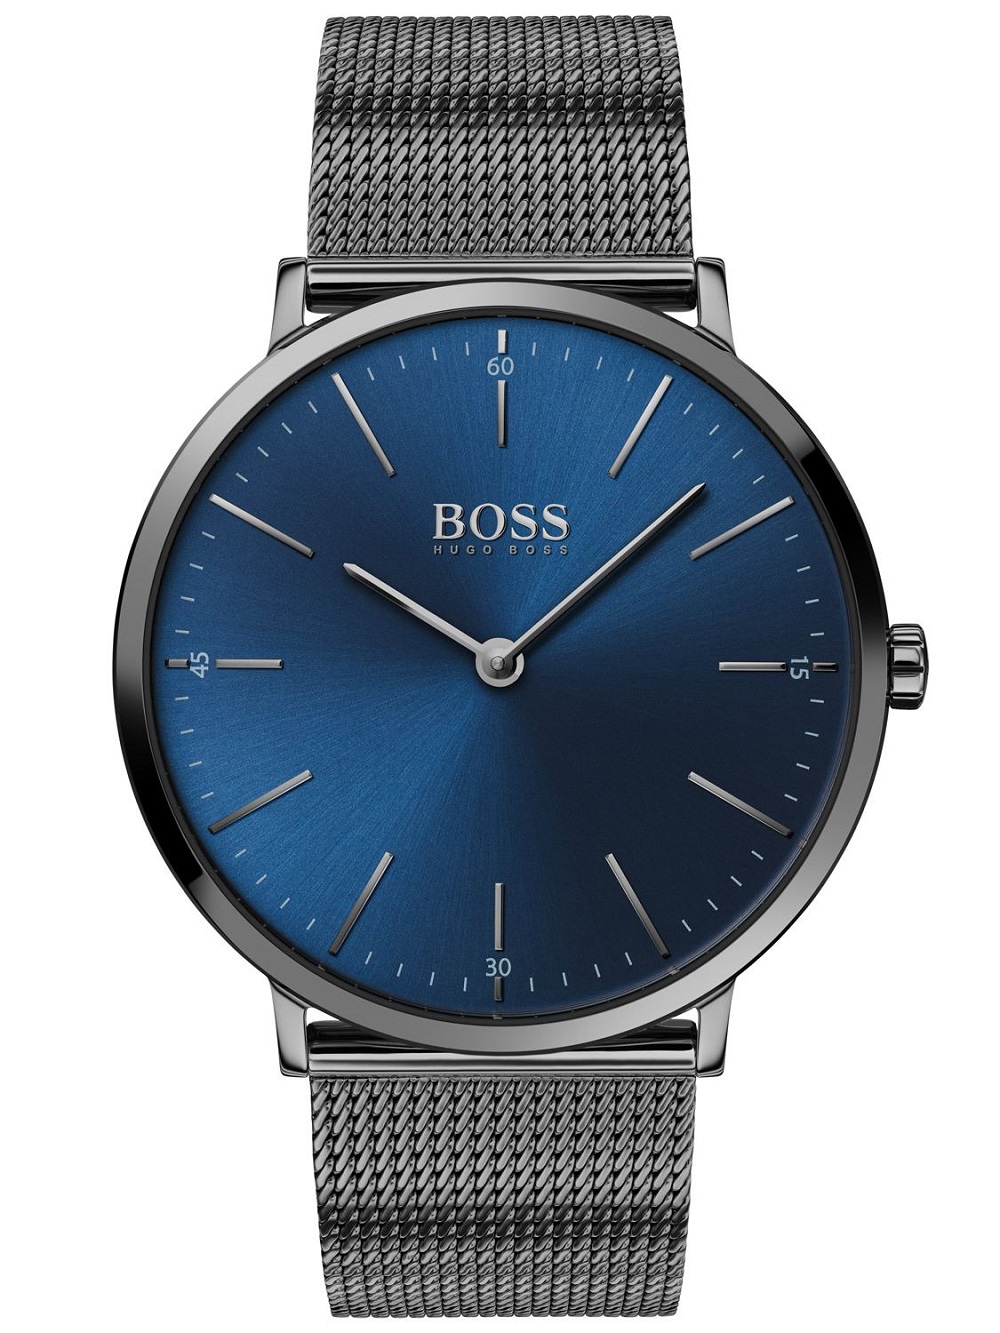 HUGO BOSS Analog Watch Men Steel bracelet Blue dial 1513734